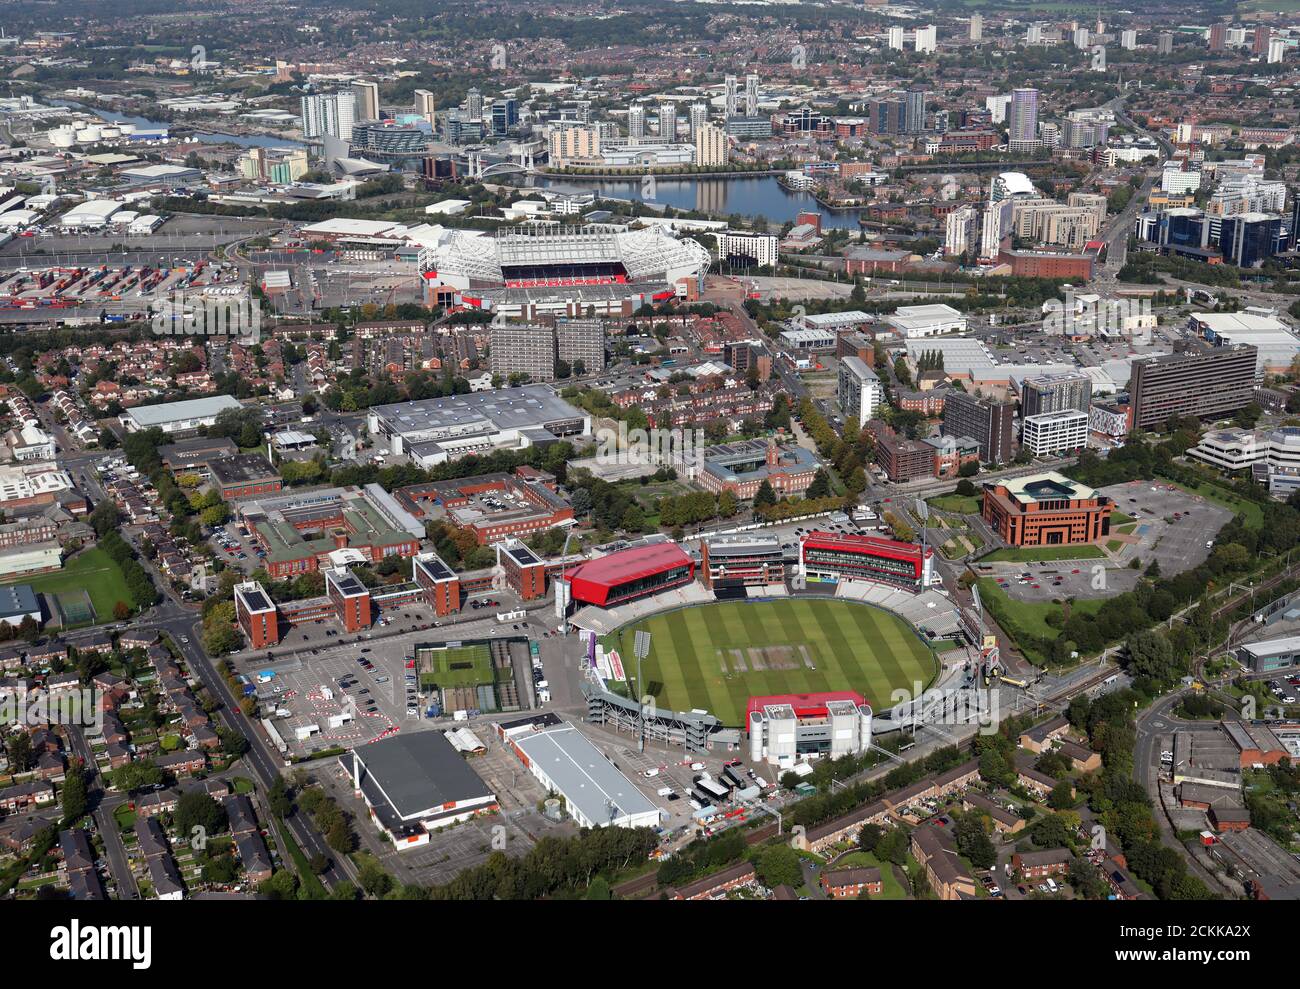 Vue aérienne du terrain de cricket d'Old Trafford en direction du nord Remonter Brian Statham Way jusqu'au terrain Old Trafford de Manchester United Et au-delà de Salford Quays Banque D'Images